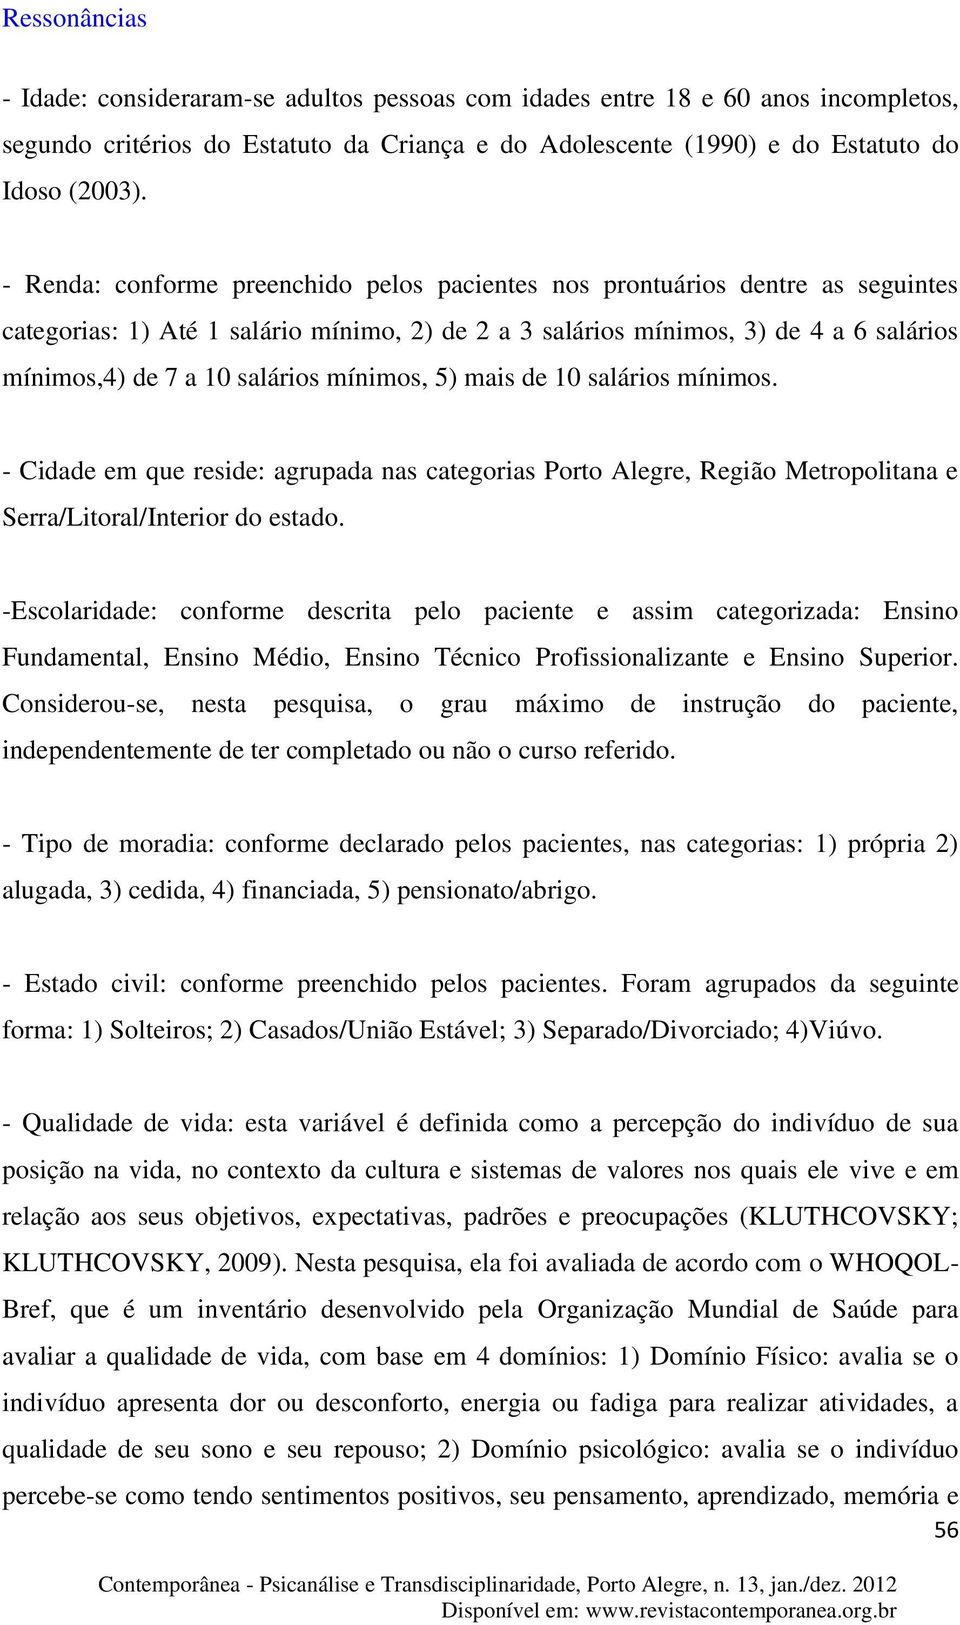 mínimos, 5) mais de 10 salários mínimos. - Cidade em que reside: agrupada nas categorias Porto Alegre, Região Metropolitana e Serra/Litoral/Interior do estado.